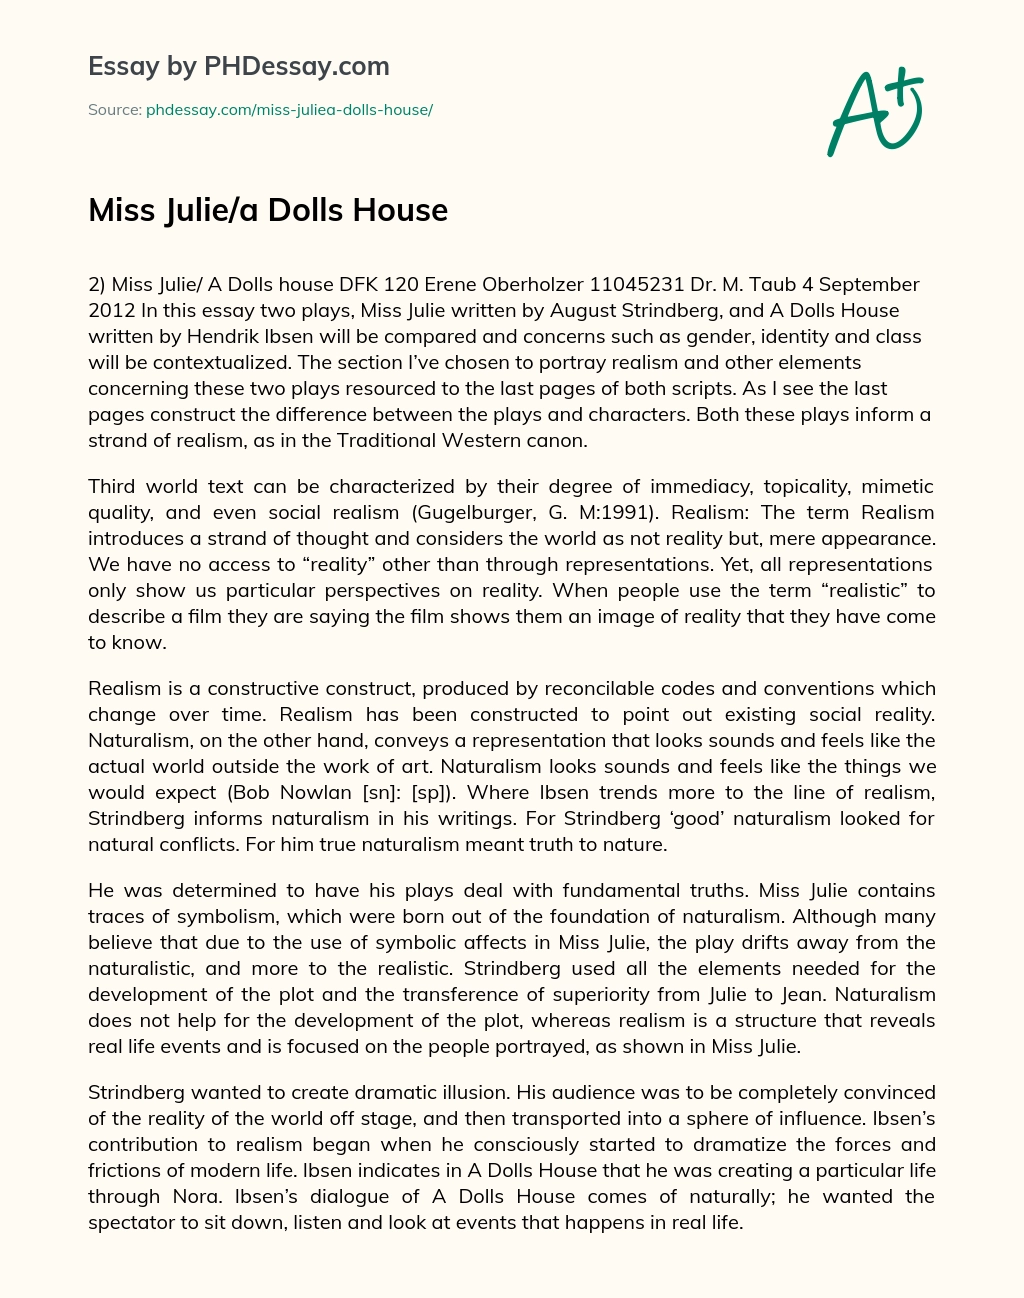 Miss Julie/a Dolls House essay